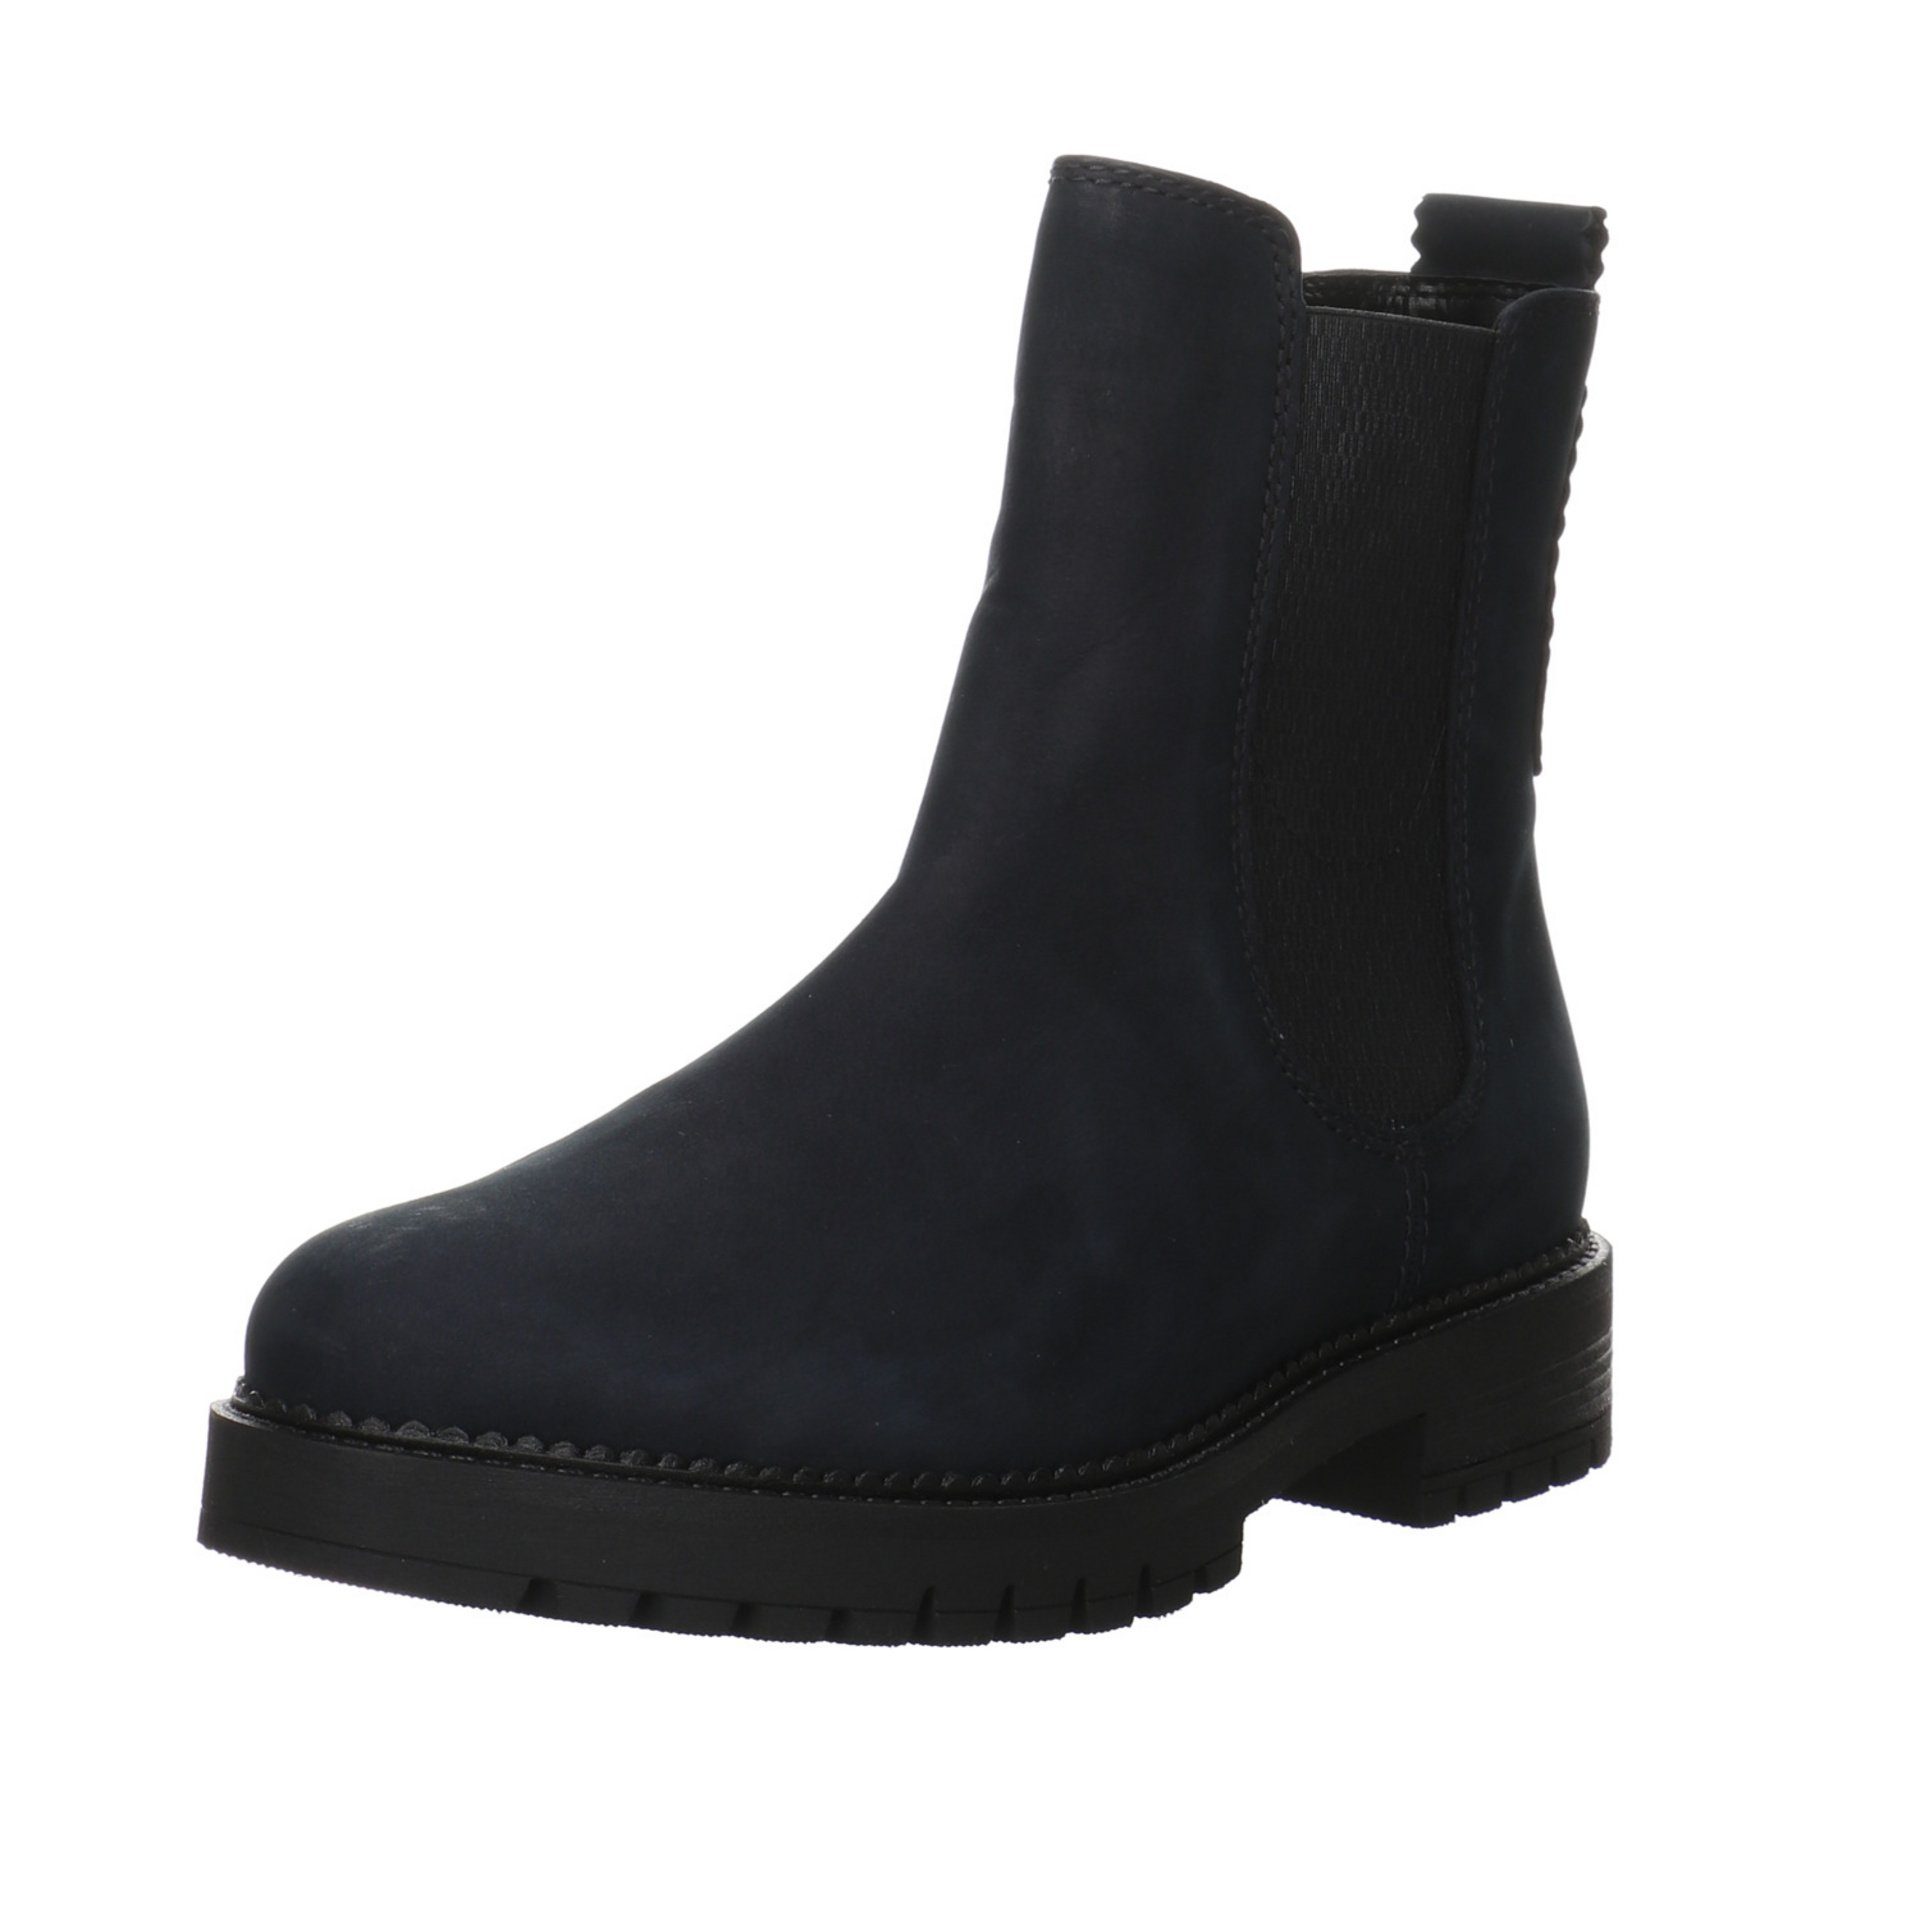 Gabor Damen Stiefel Schuhe Chelsea Boots Stiefel Leder-/Textilkombination nightblue(Flausch)